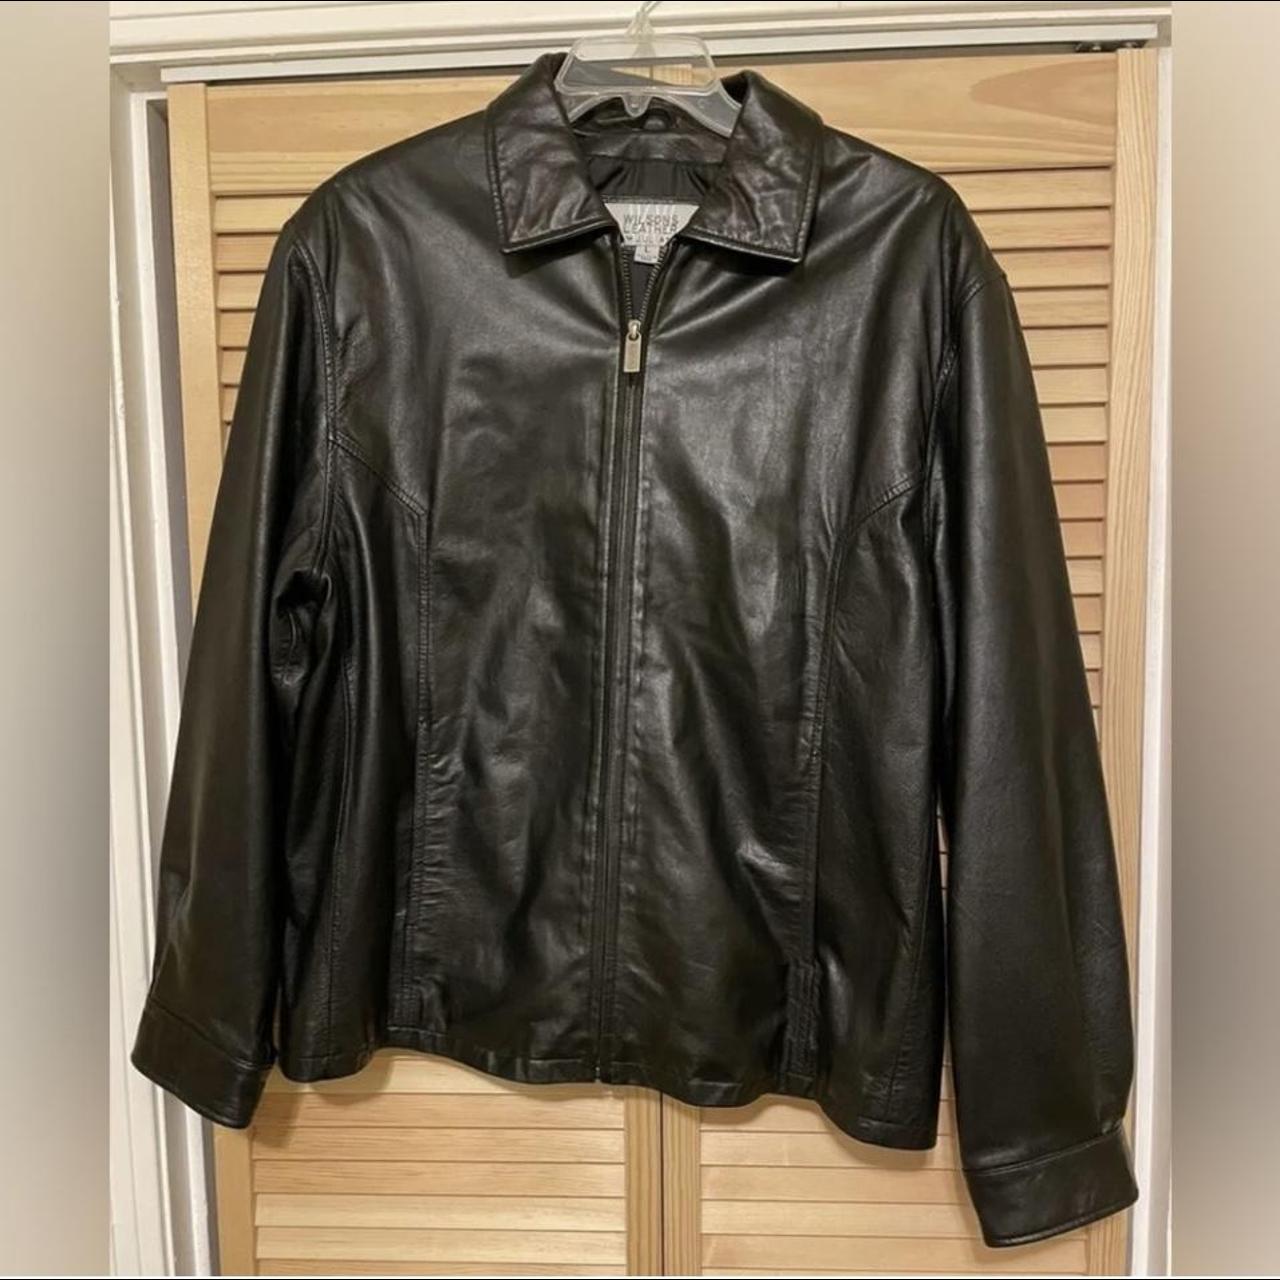 Vintage 1985 Wilson’s Genuine Leather Jacket. Very... - Depop